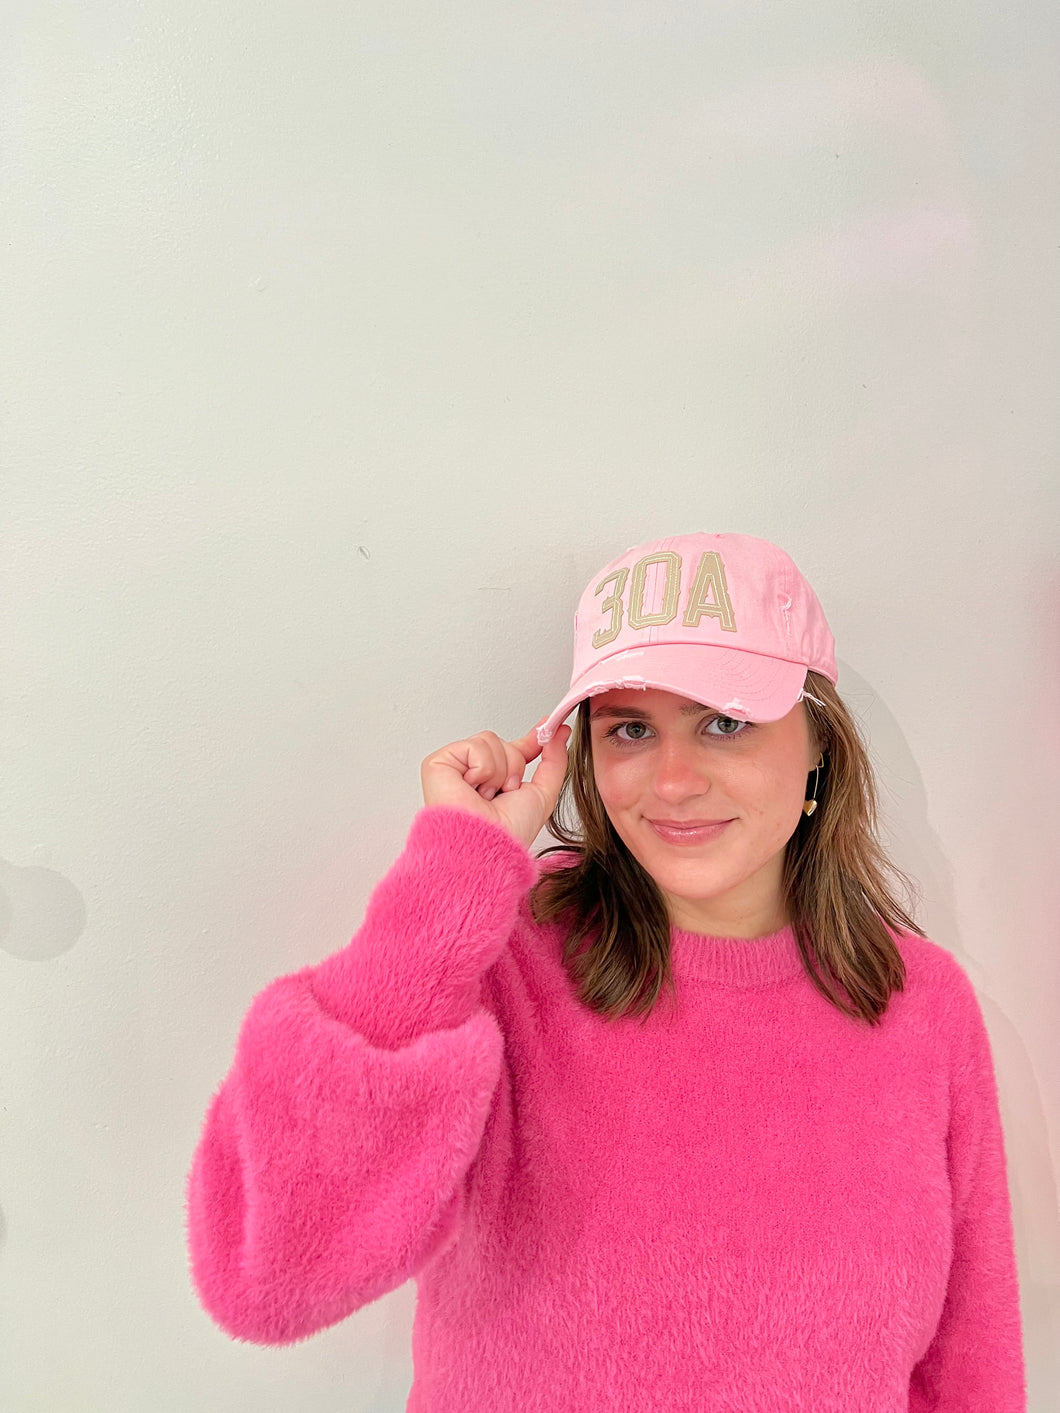 30A Hat - Light Pink